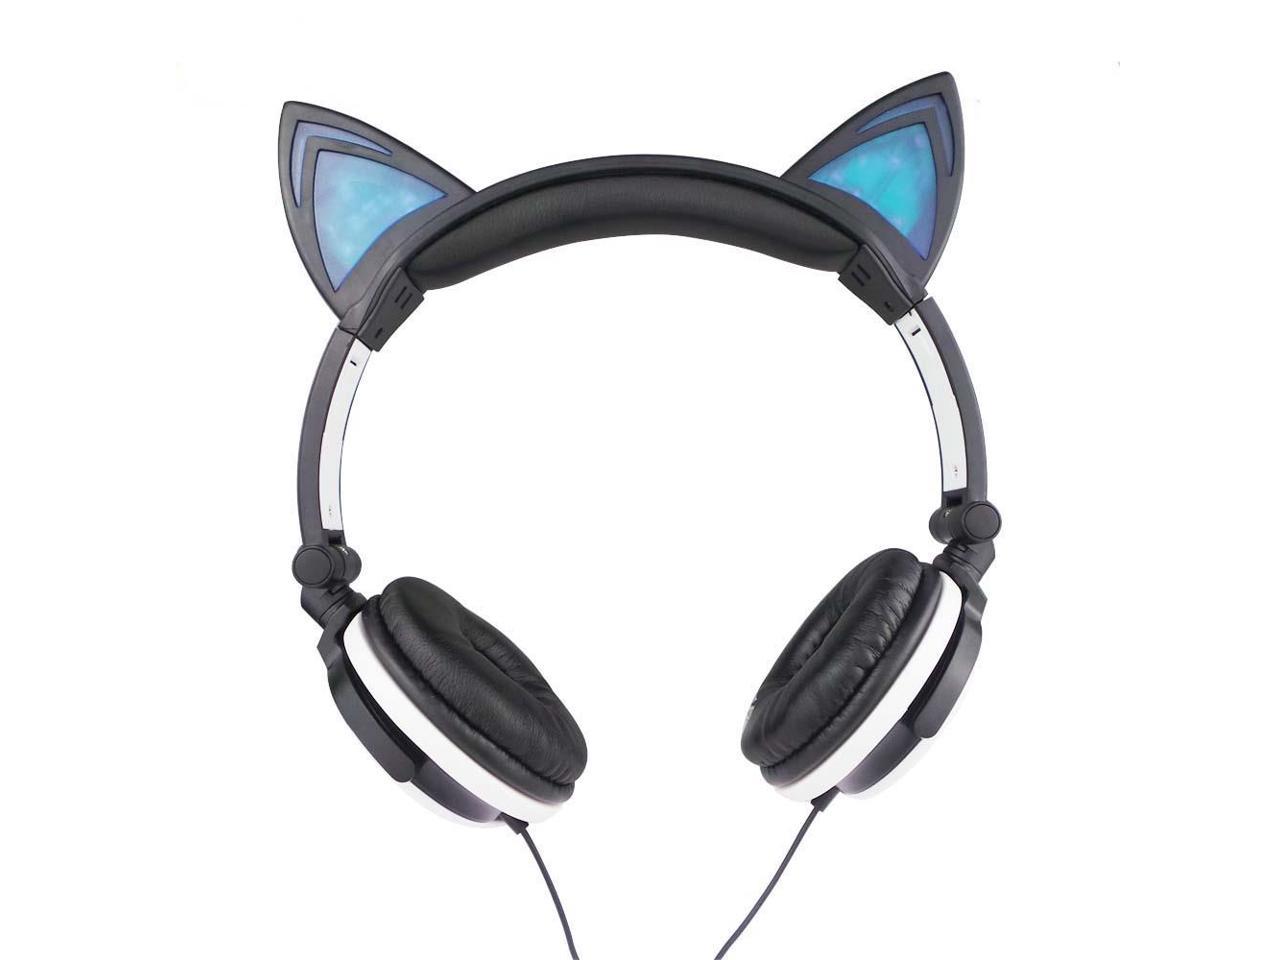 KOMRT Lovely Cat Ear Like Headphone with Blinking LED Lights, Stereo Voice Quality for Computer, Laptop, Cellphone - Black